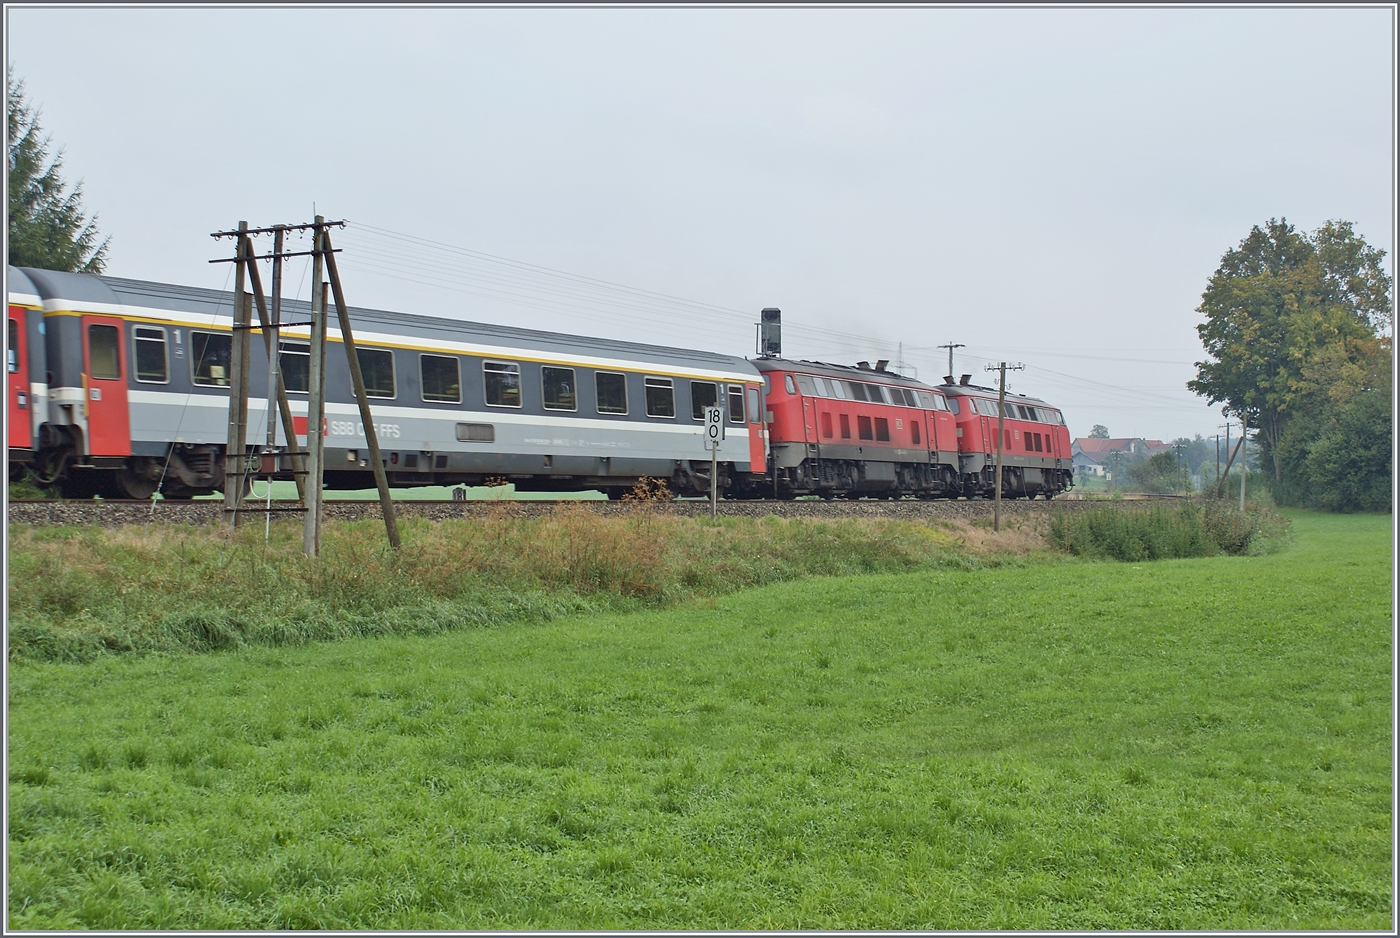 Gleich nach den beidne Dieseloks ist - soweit ich erkennen kann - ein 1. Klasse Eurofima Wagen eingereiht.
Der Zug ist bei Hergatz auf dem Weg nach München. 

11. Sept. 2009